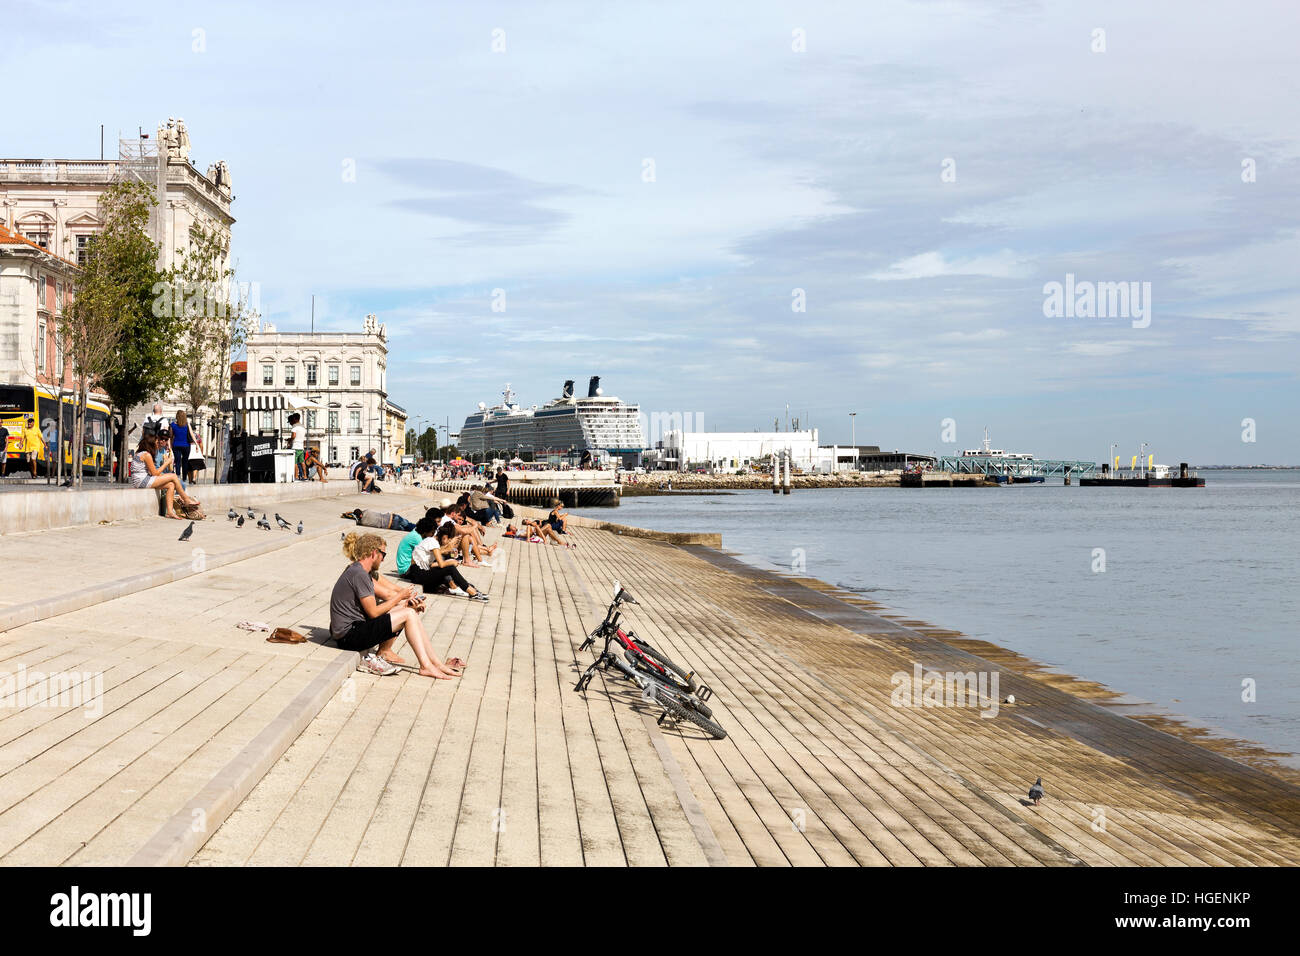 Les gens et le Tage beach et niverside Ribeira das Naus promenade Avenue, avec un bateau de croisière amarré à Lisbonne, Portugal Banque D'Images